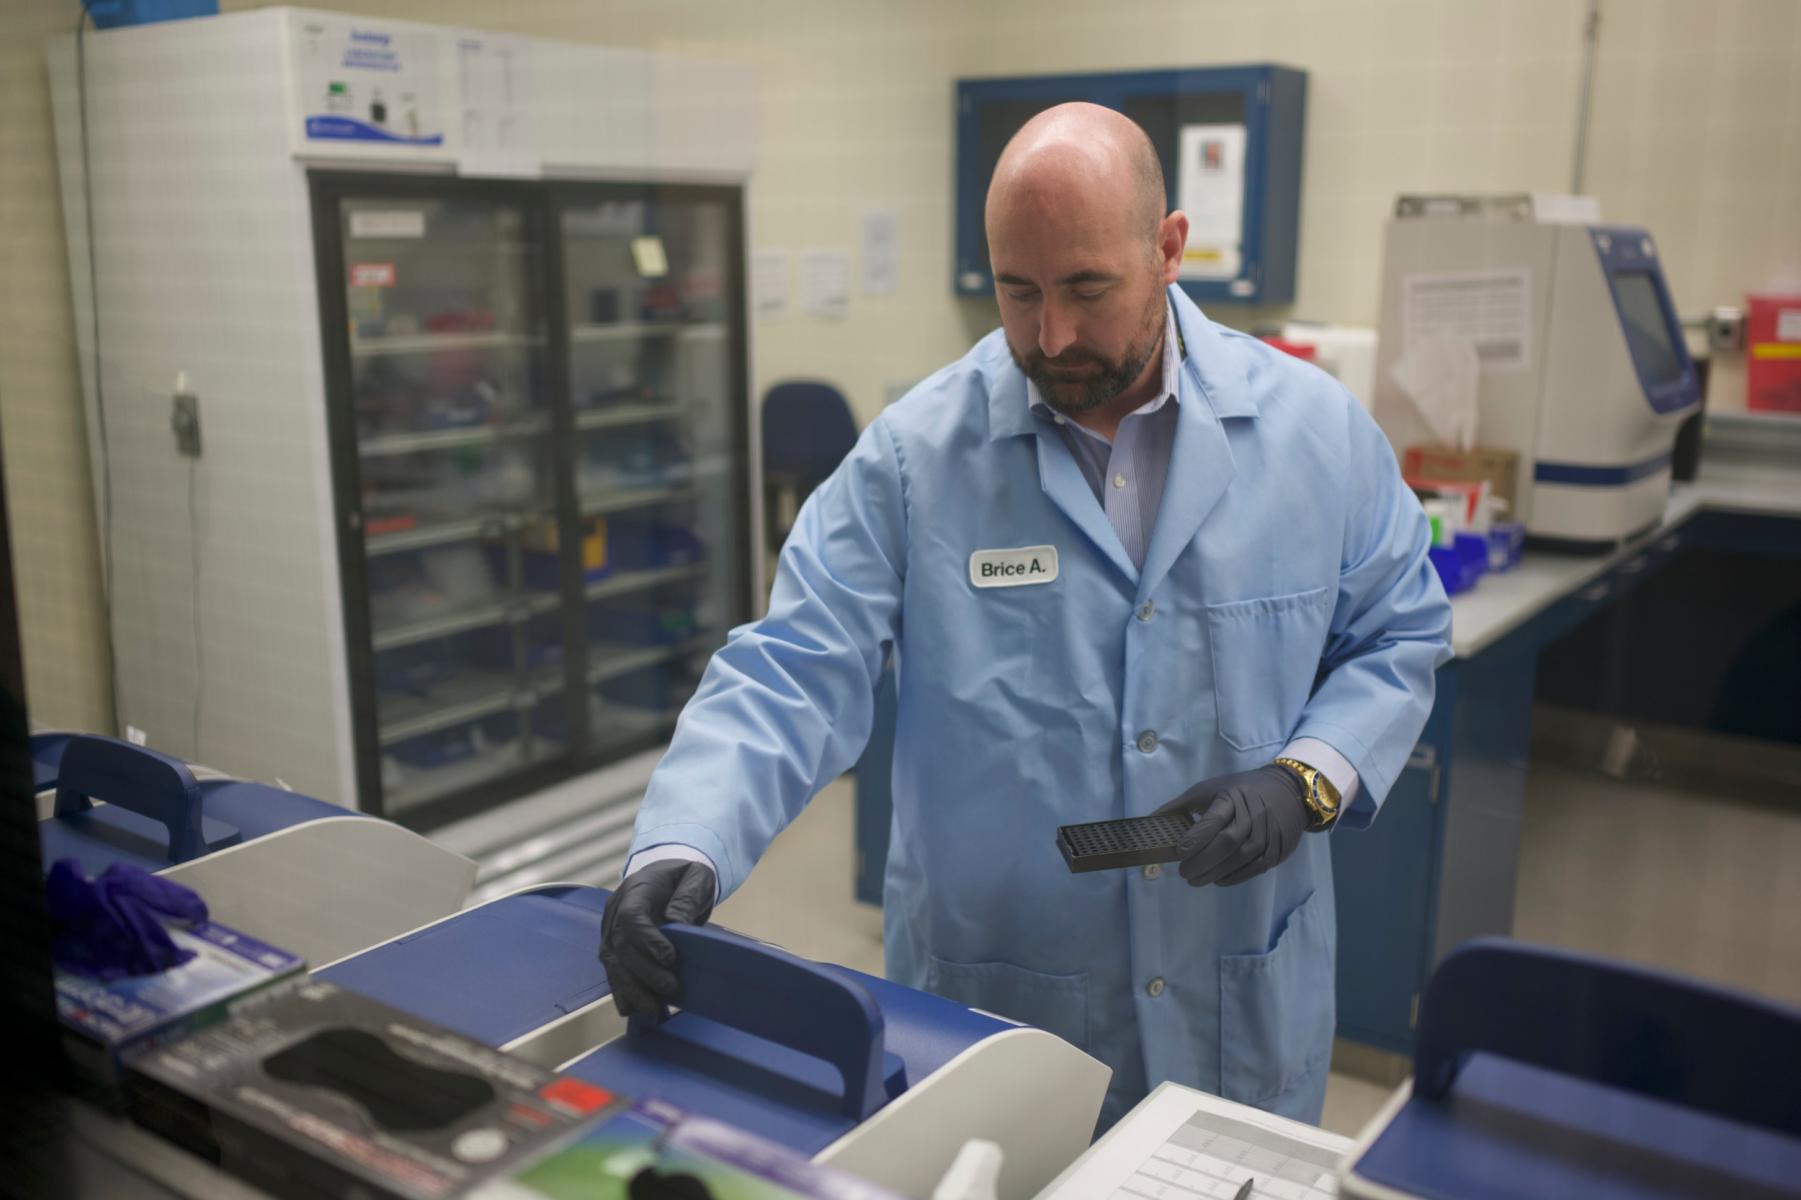 Man in lab coat